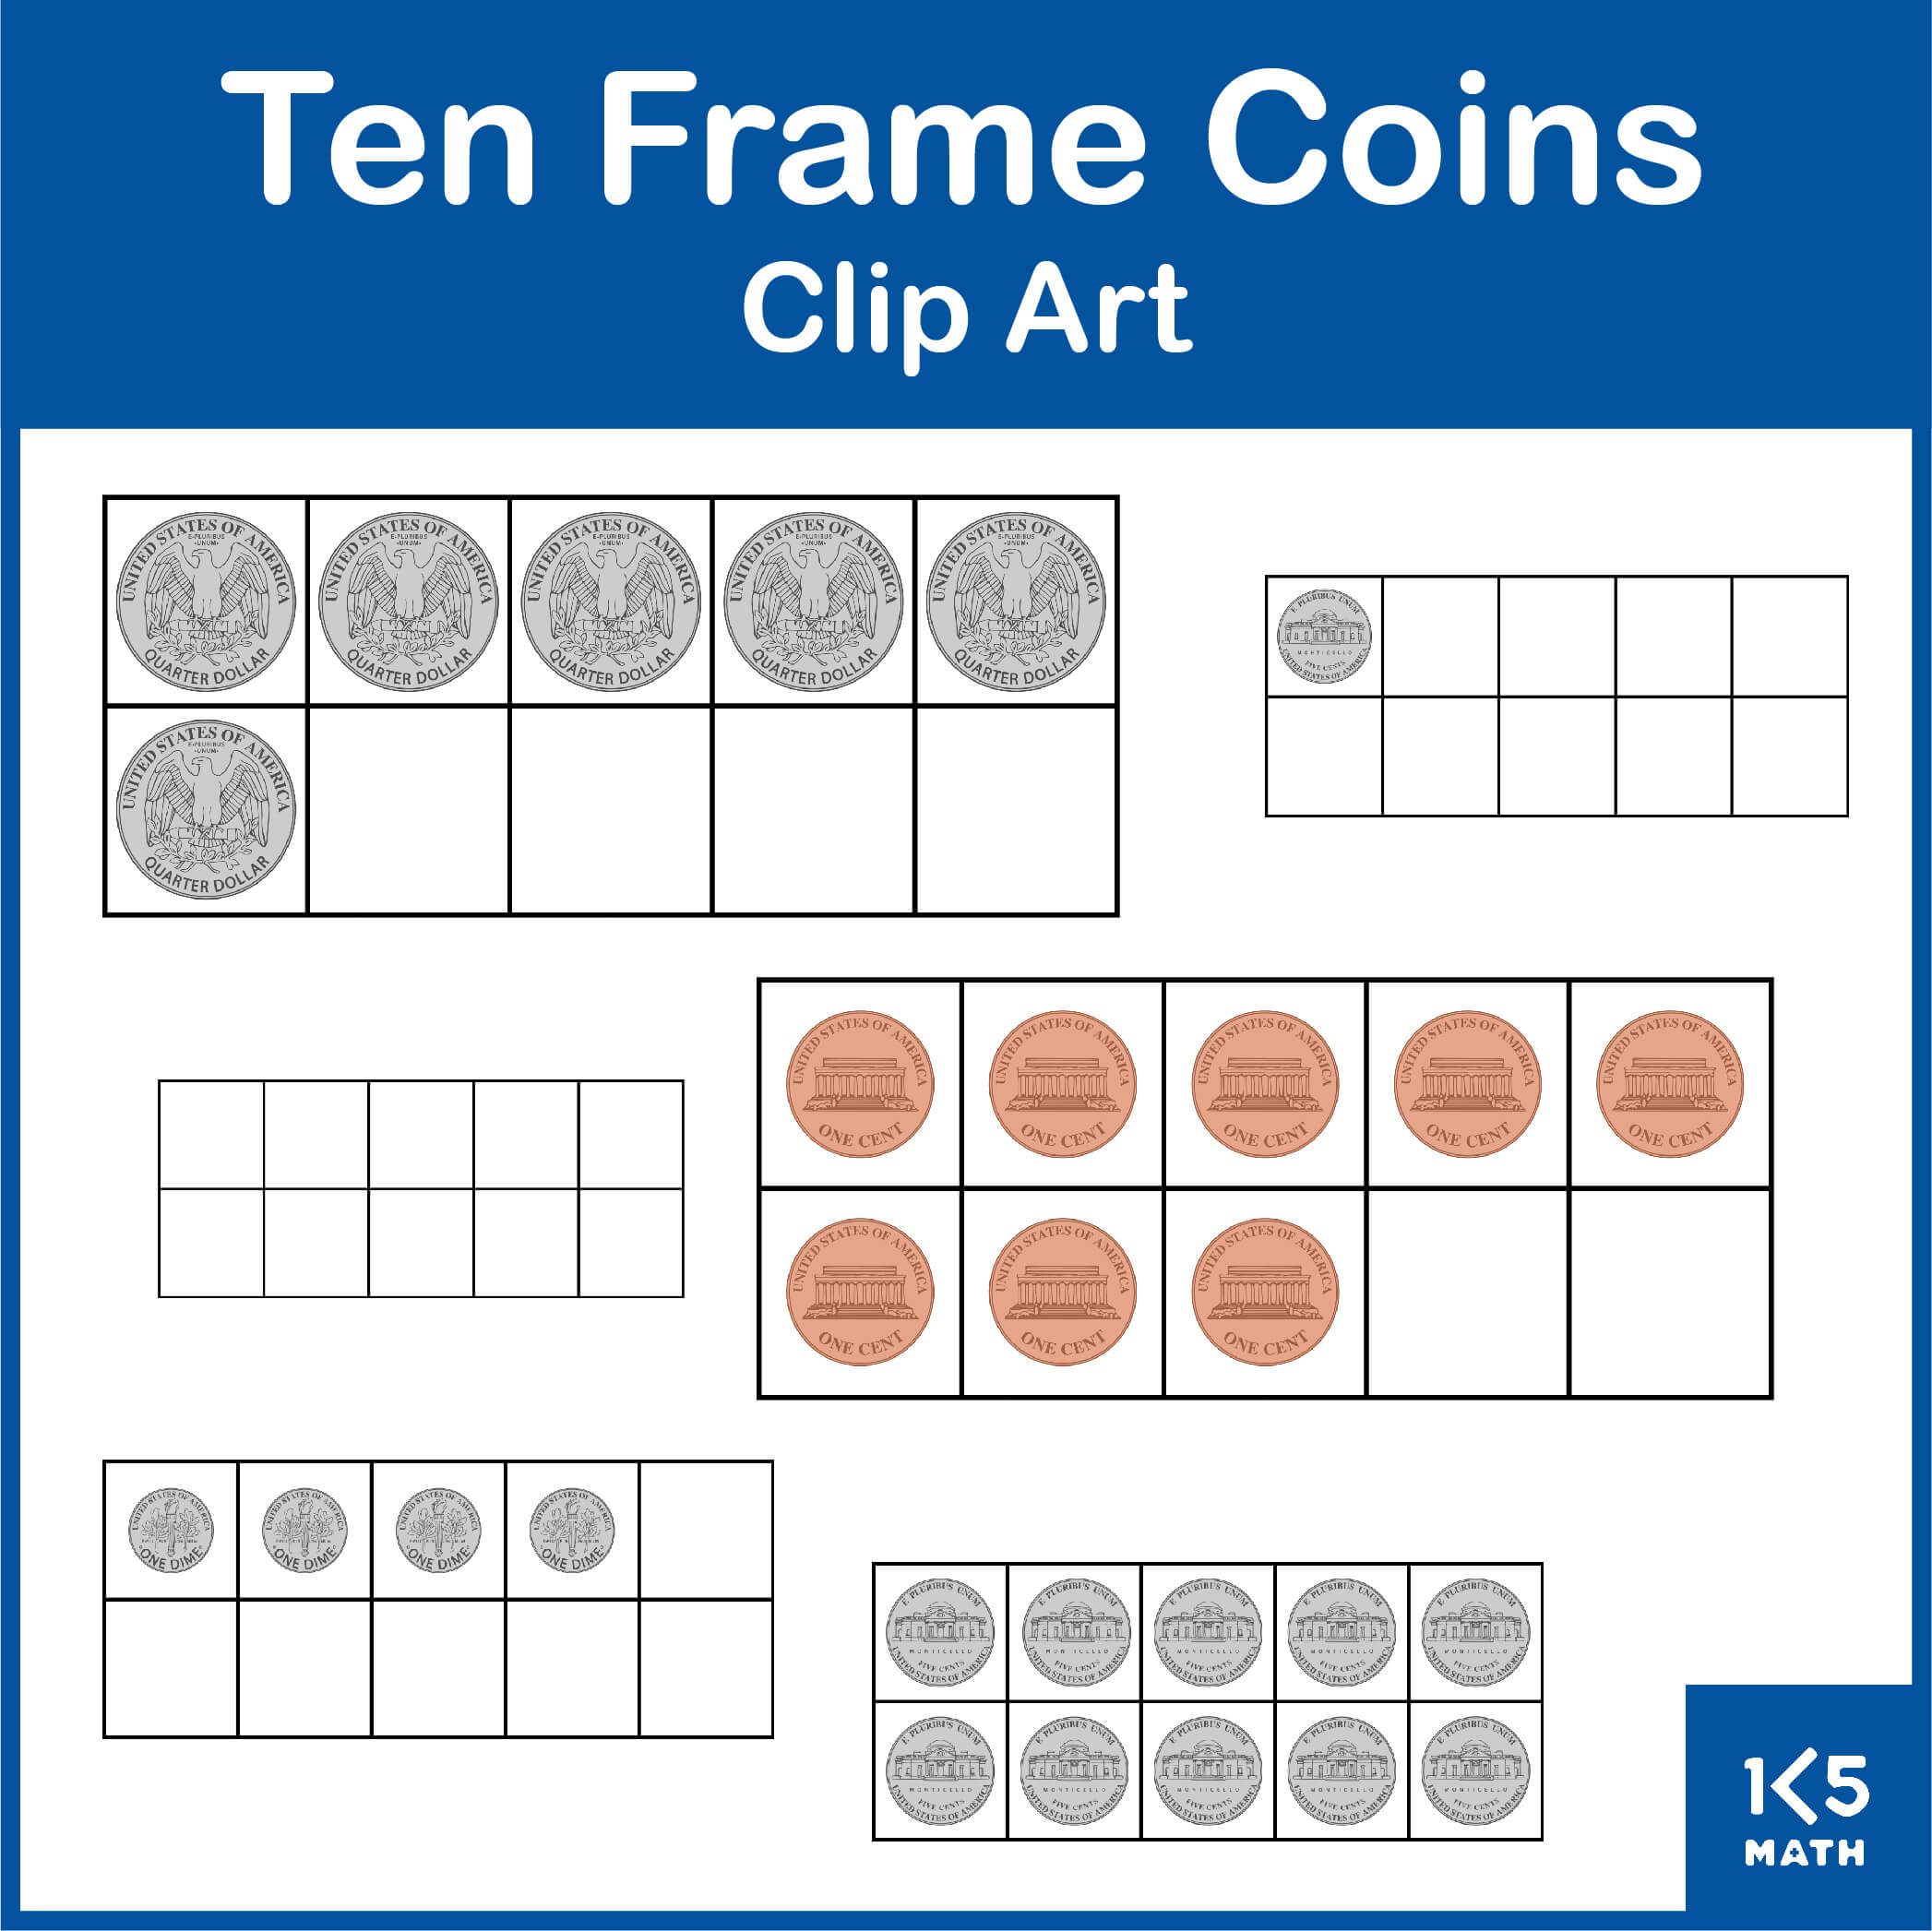 Ten Frame Coins Clip Art